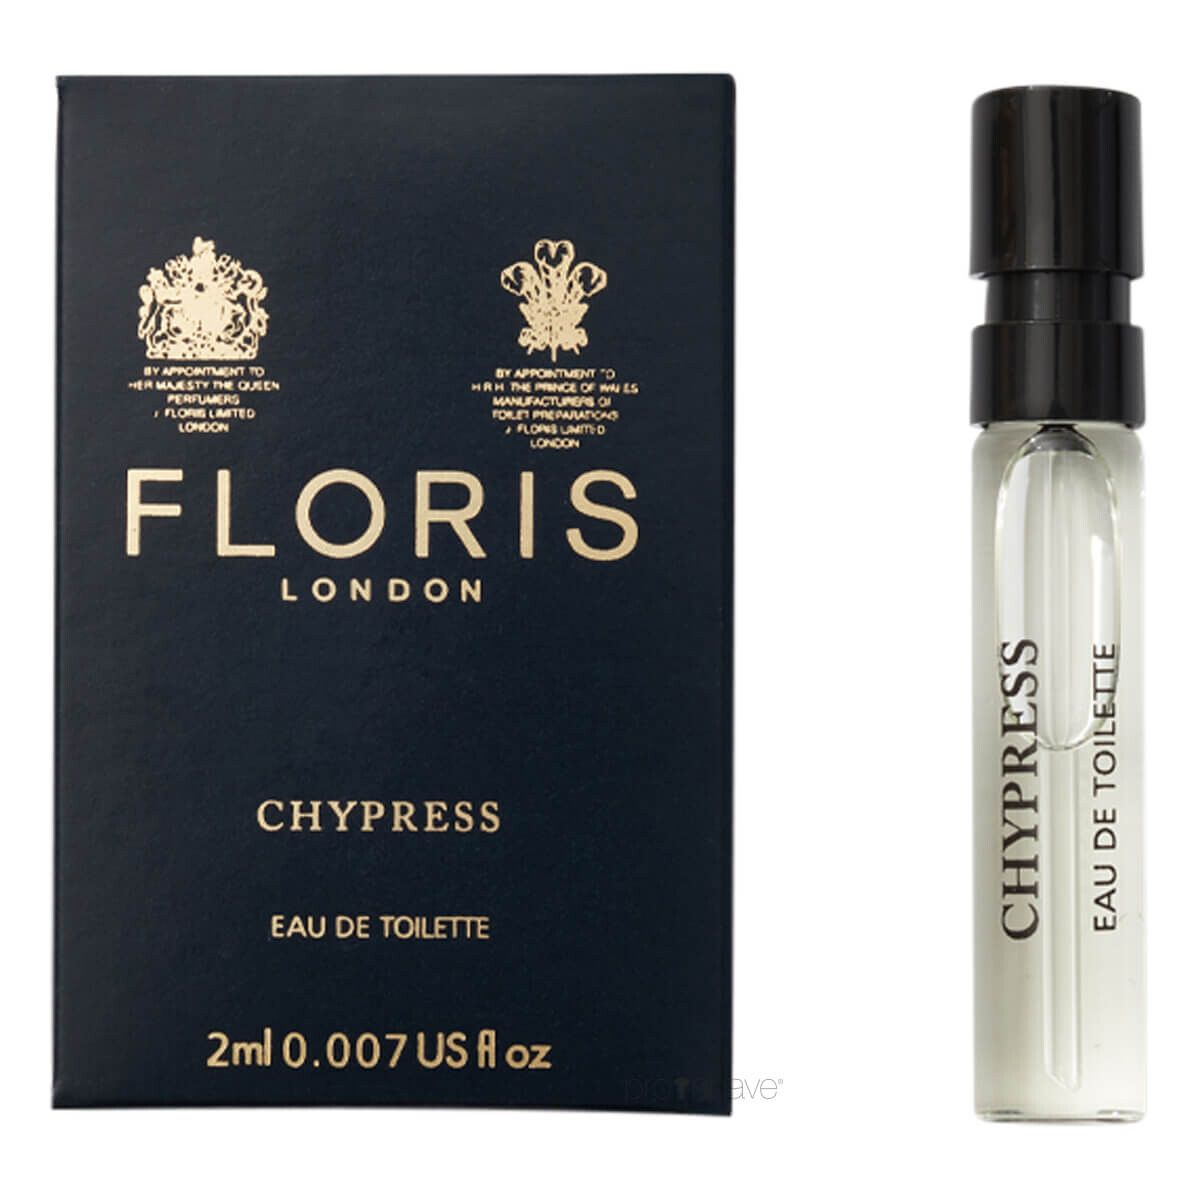 9: Floris Chypress, Eau de Toilette, DUFTPRØVE, 2 ml.